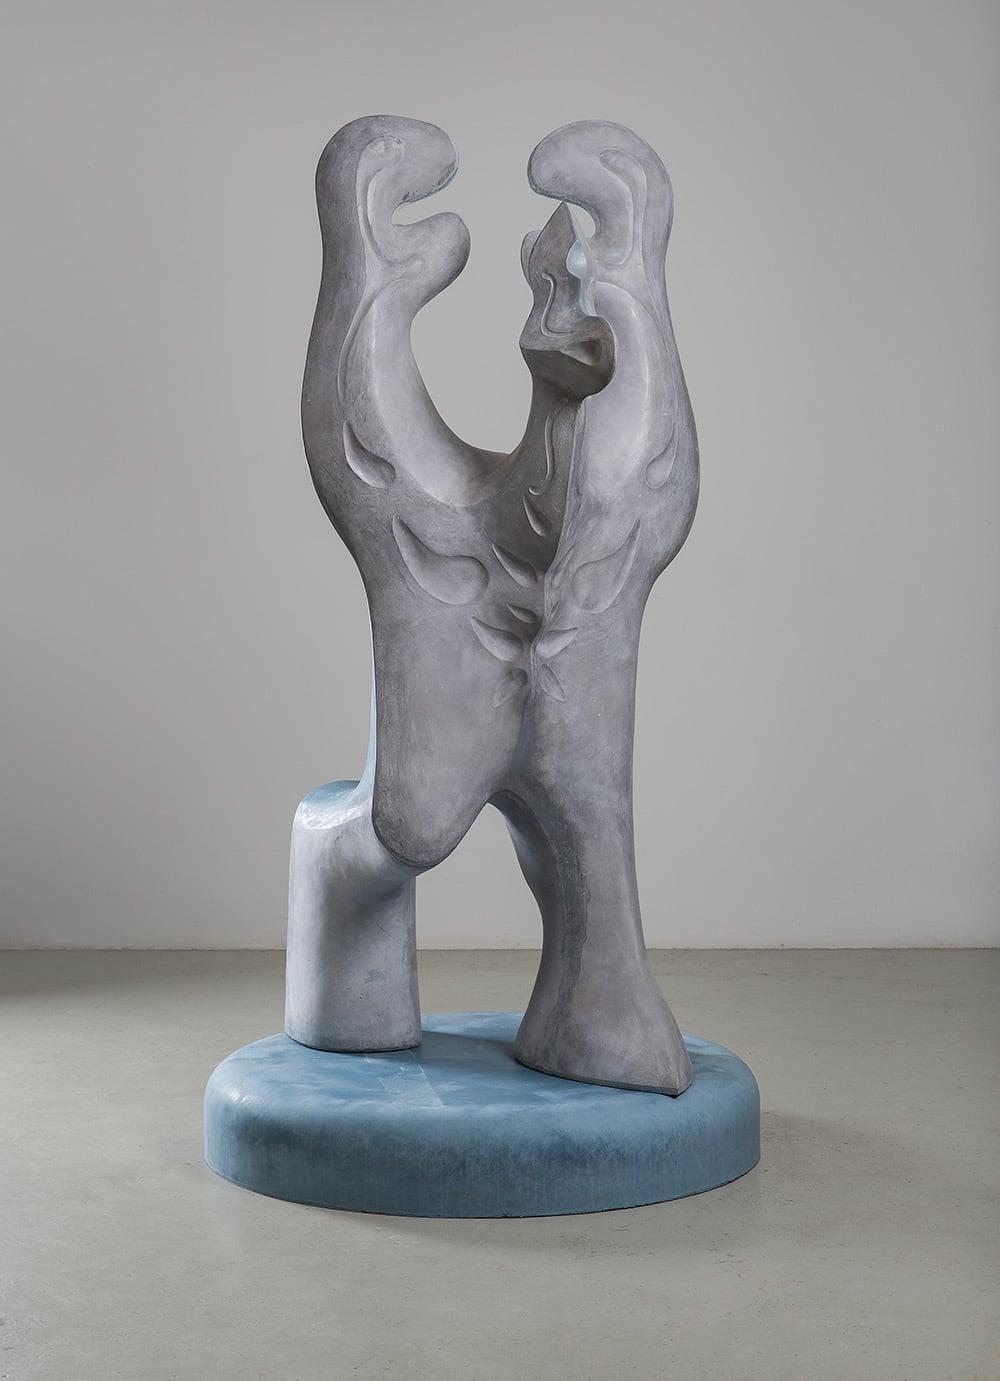 Big Creature de Pavlína Kvita - Sculpture contemporaine, figure futuriste, grise